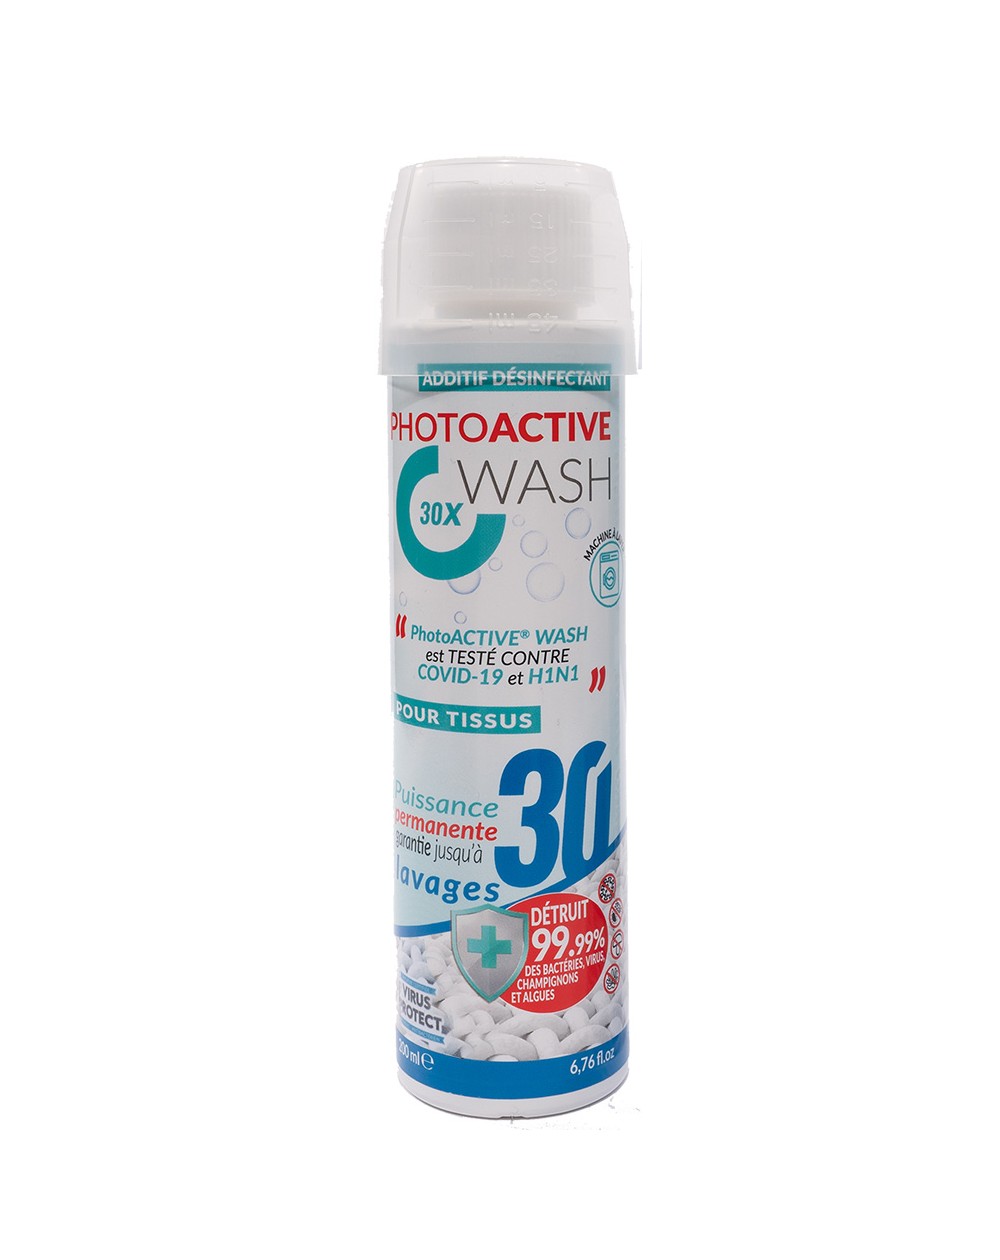 PhotoACTIVE Wash 30 lavages en bouteille de 200 ml, biocide permanent de traitement des textiles